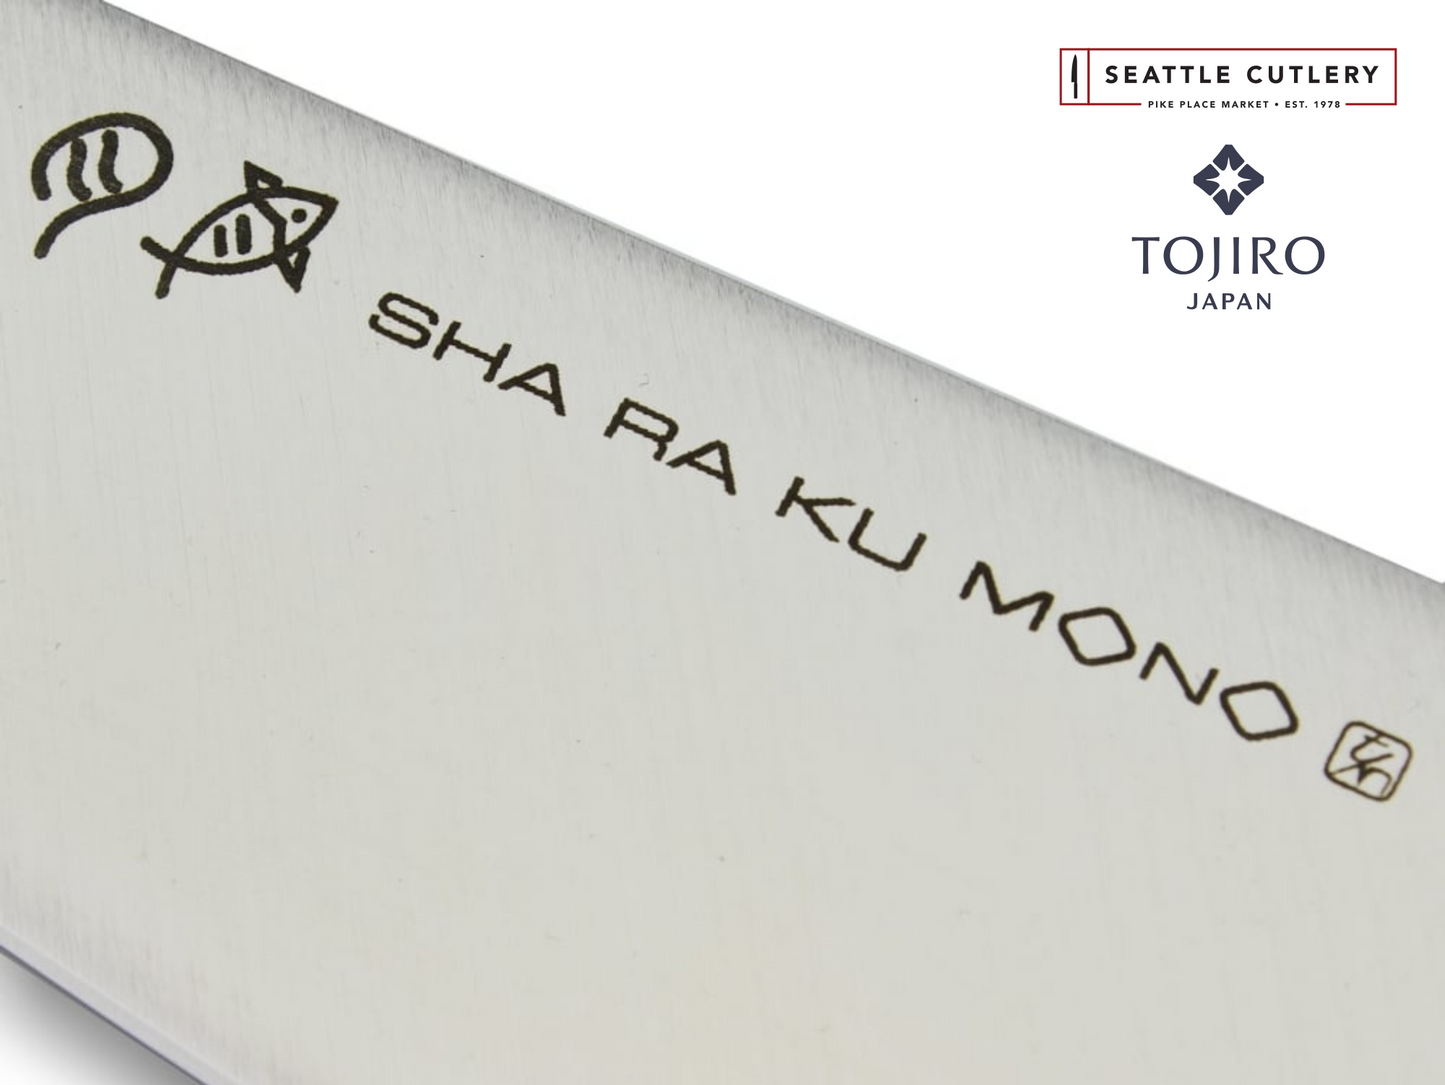 Sha Ra Ku Mono Cheese Knife, 150 mm (5.9")